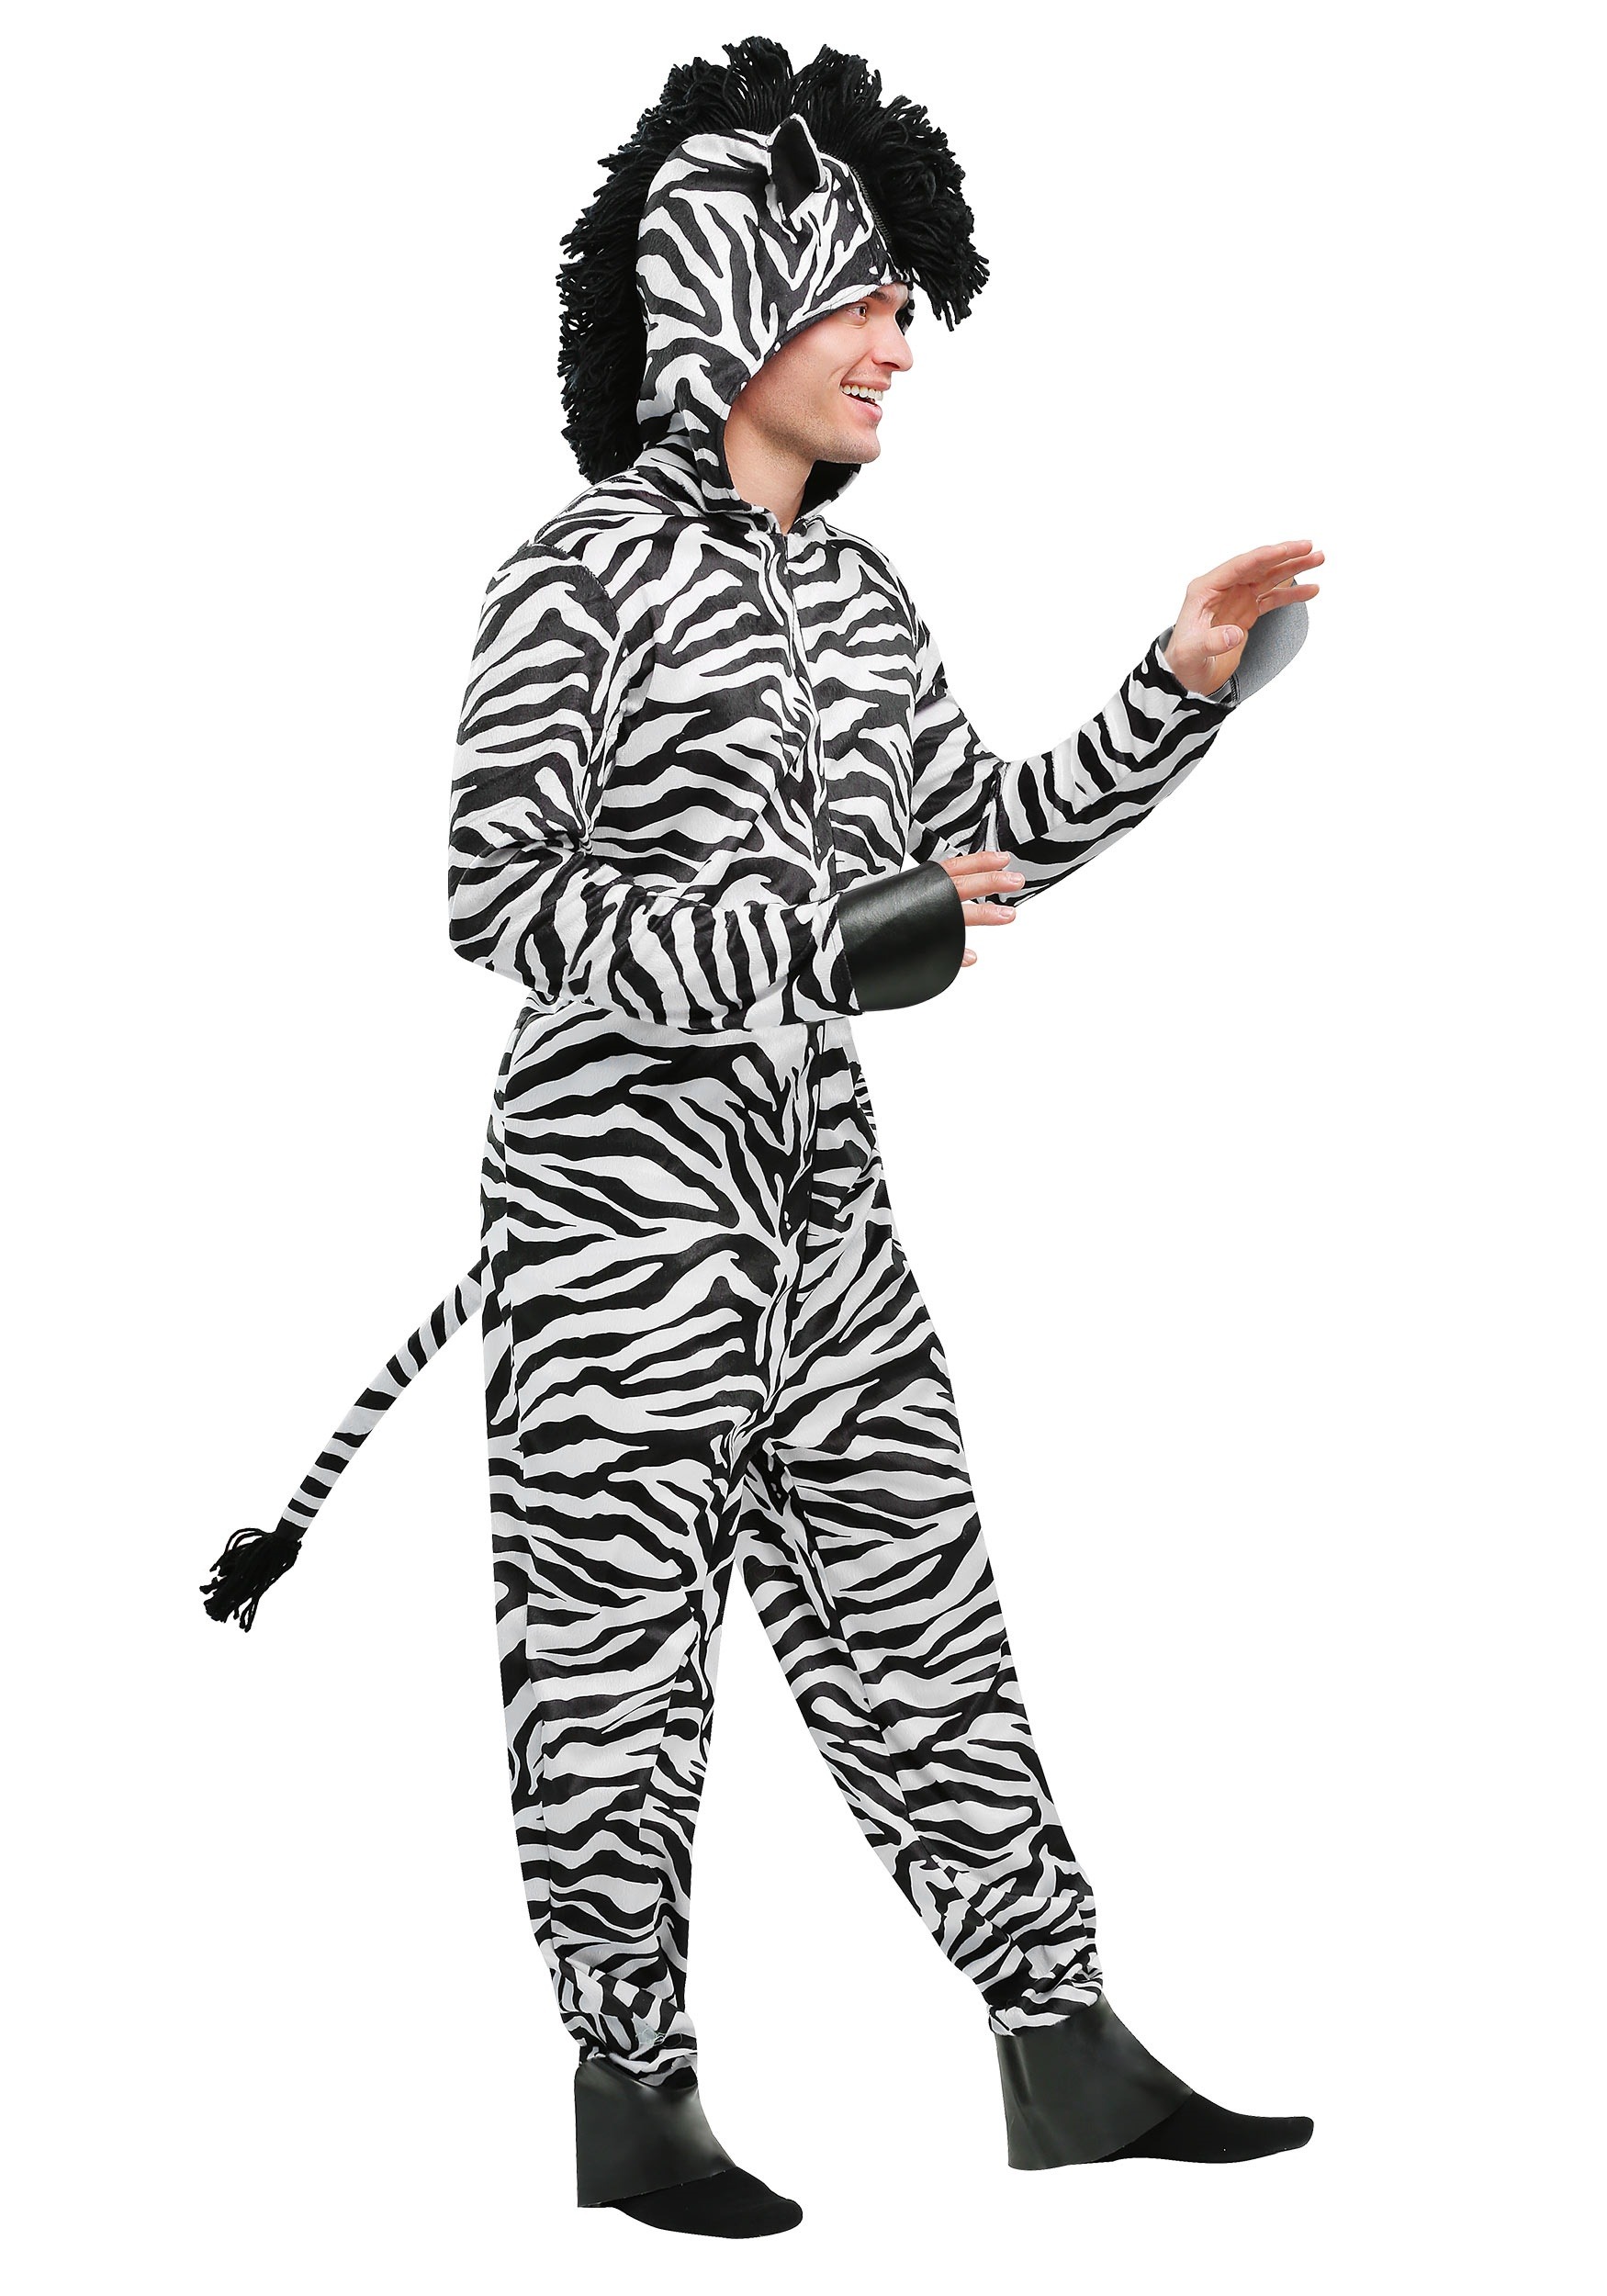 Wild Zebra Adult Costume